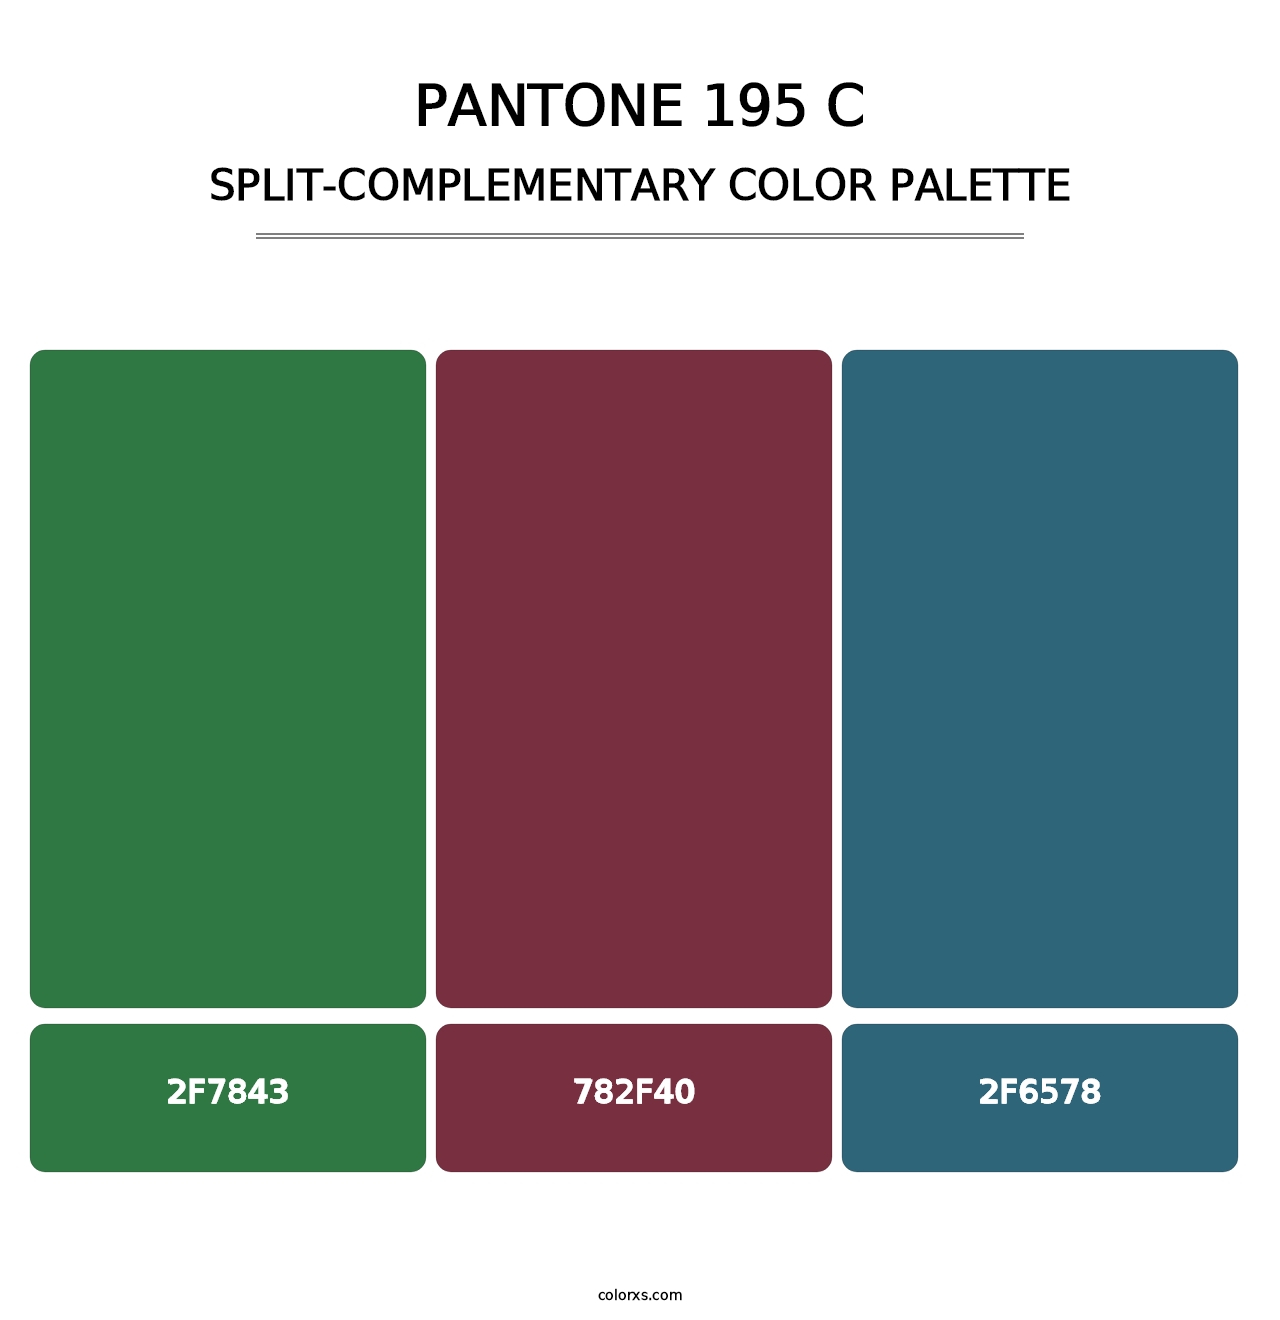 PANTONE 195 C - Split-Complementary Color Palette